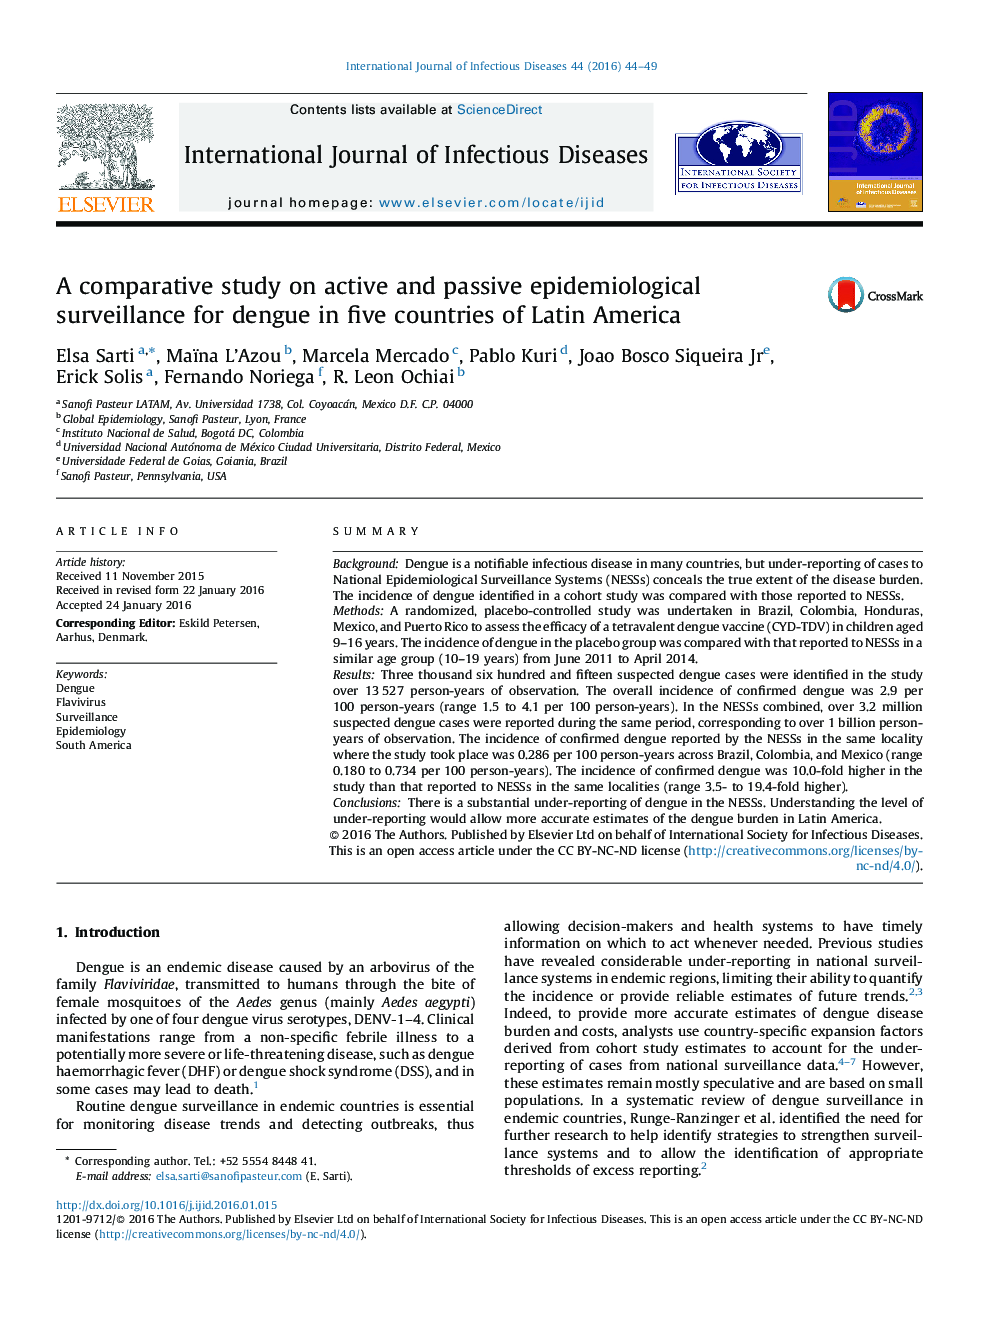 یک مطالعه مقایسه ای در مورد اپیدمیولوژیک فعال و غیر فعال برای دنگی در پنج کشور آمریکای لاتین 